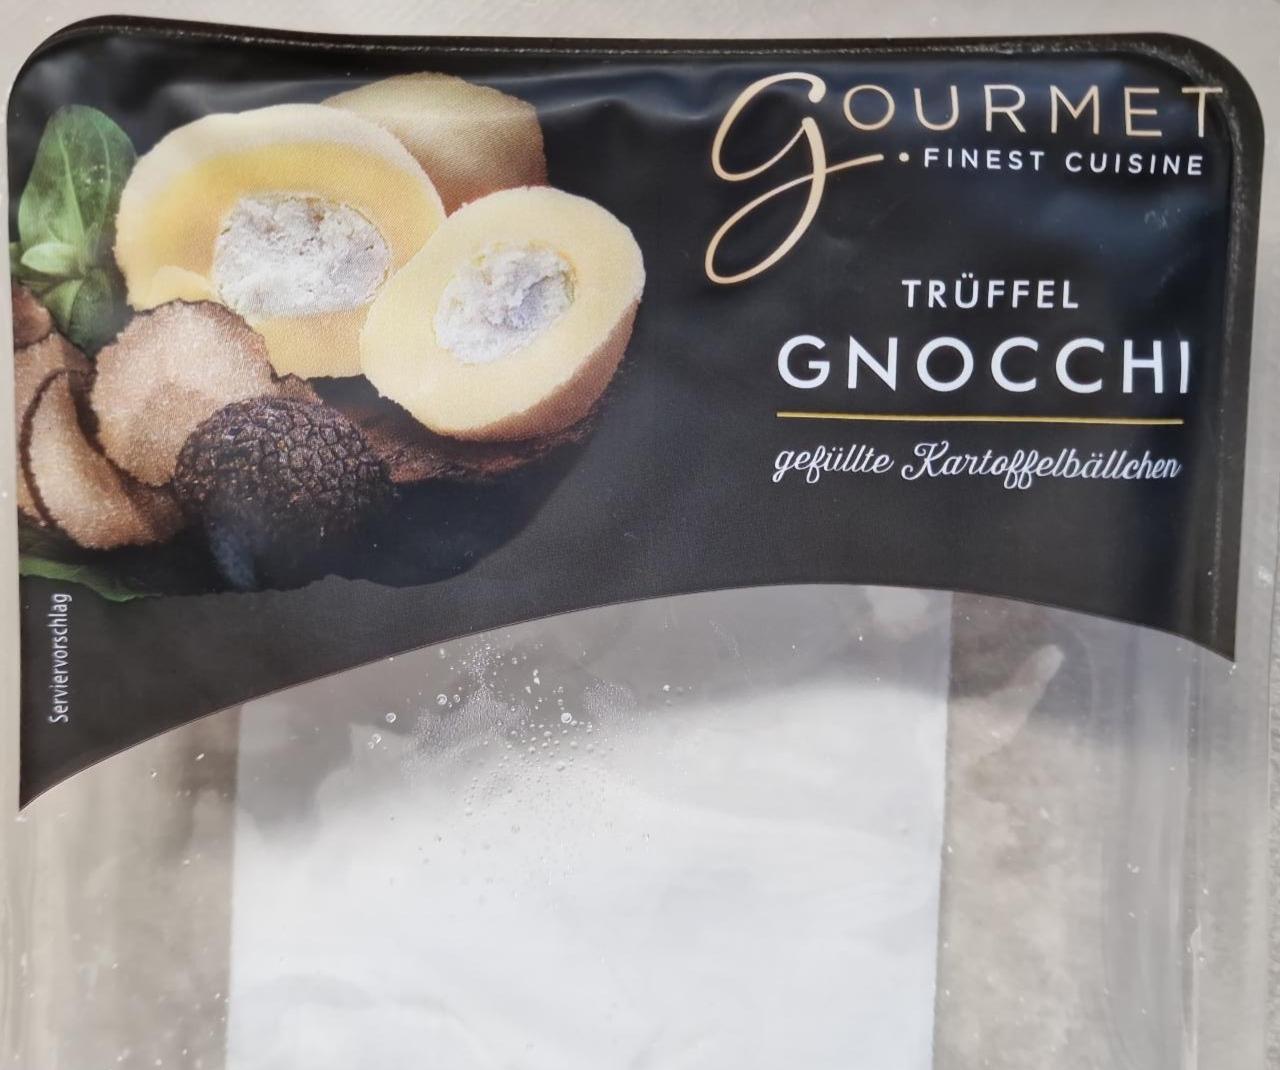 Fotografie - Trüffel Gnocchi gefüllte Kartoffelbällchen Gourmet